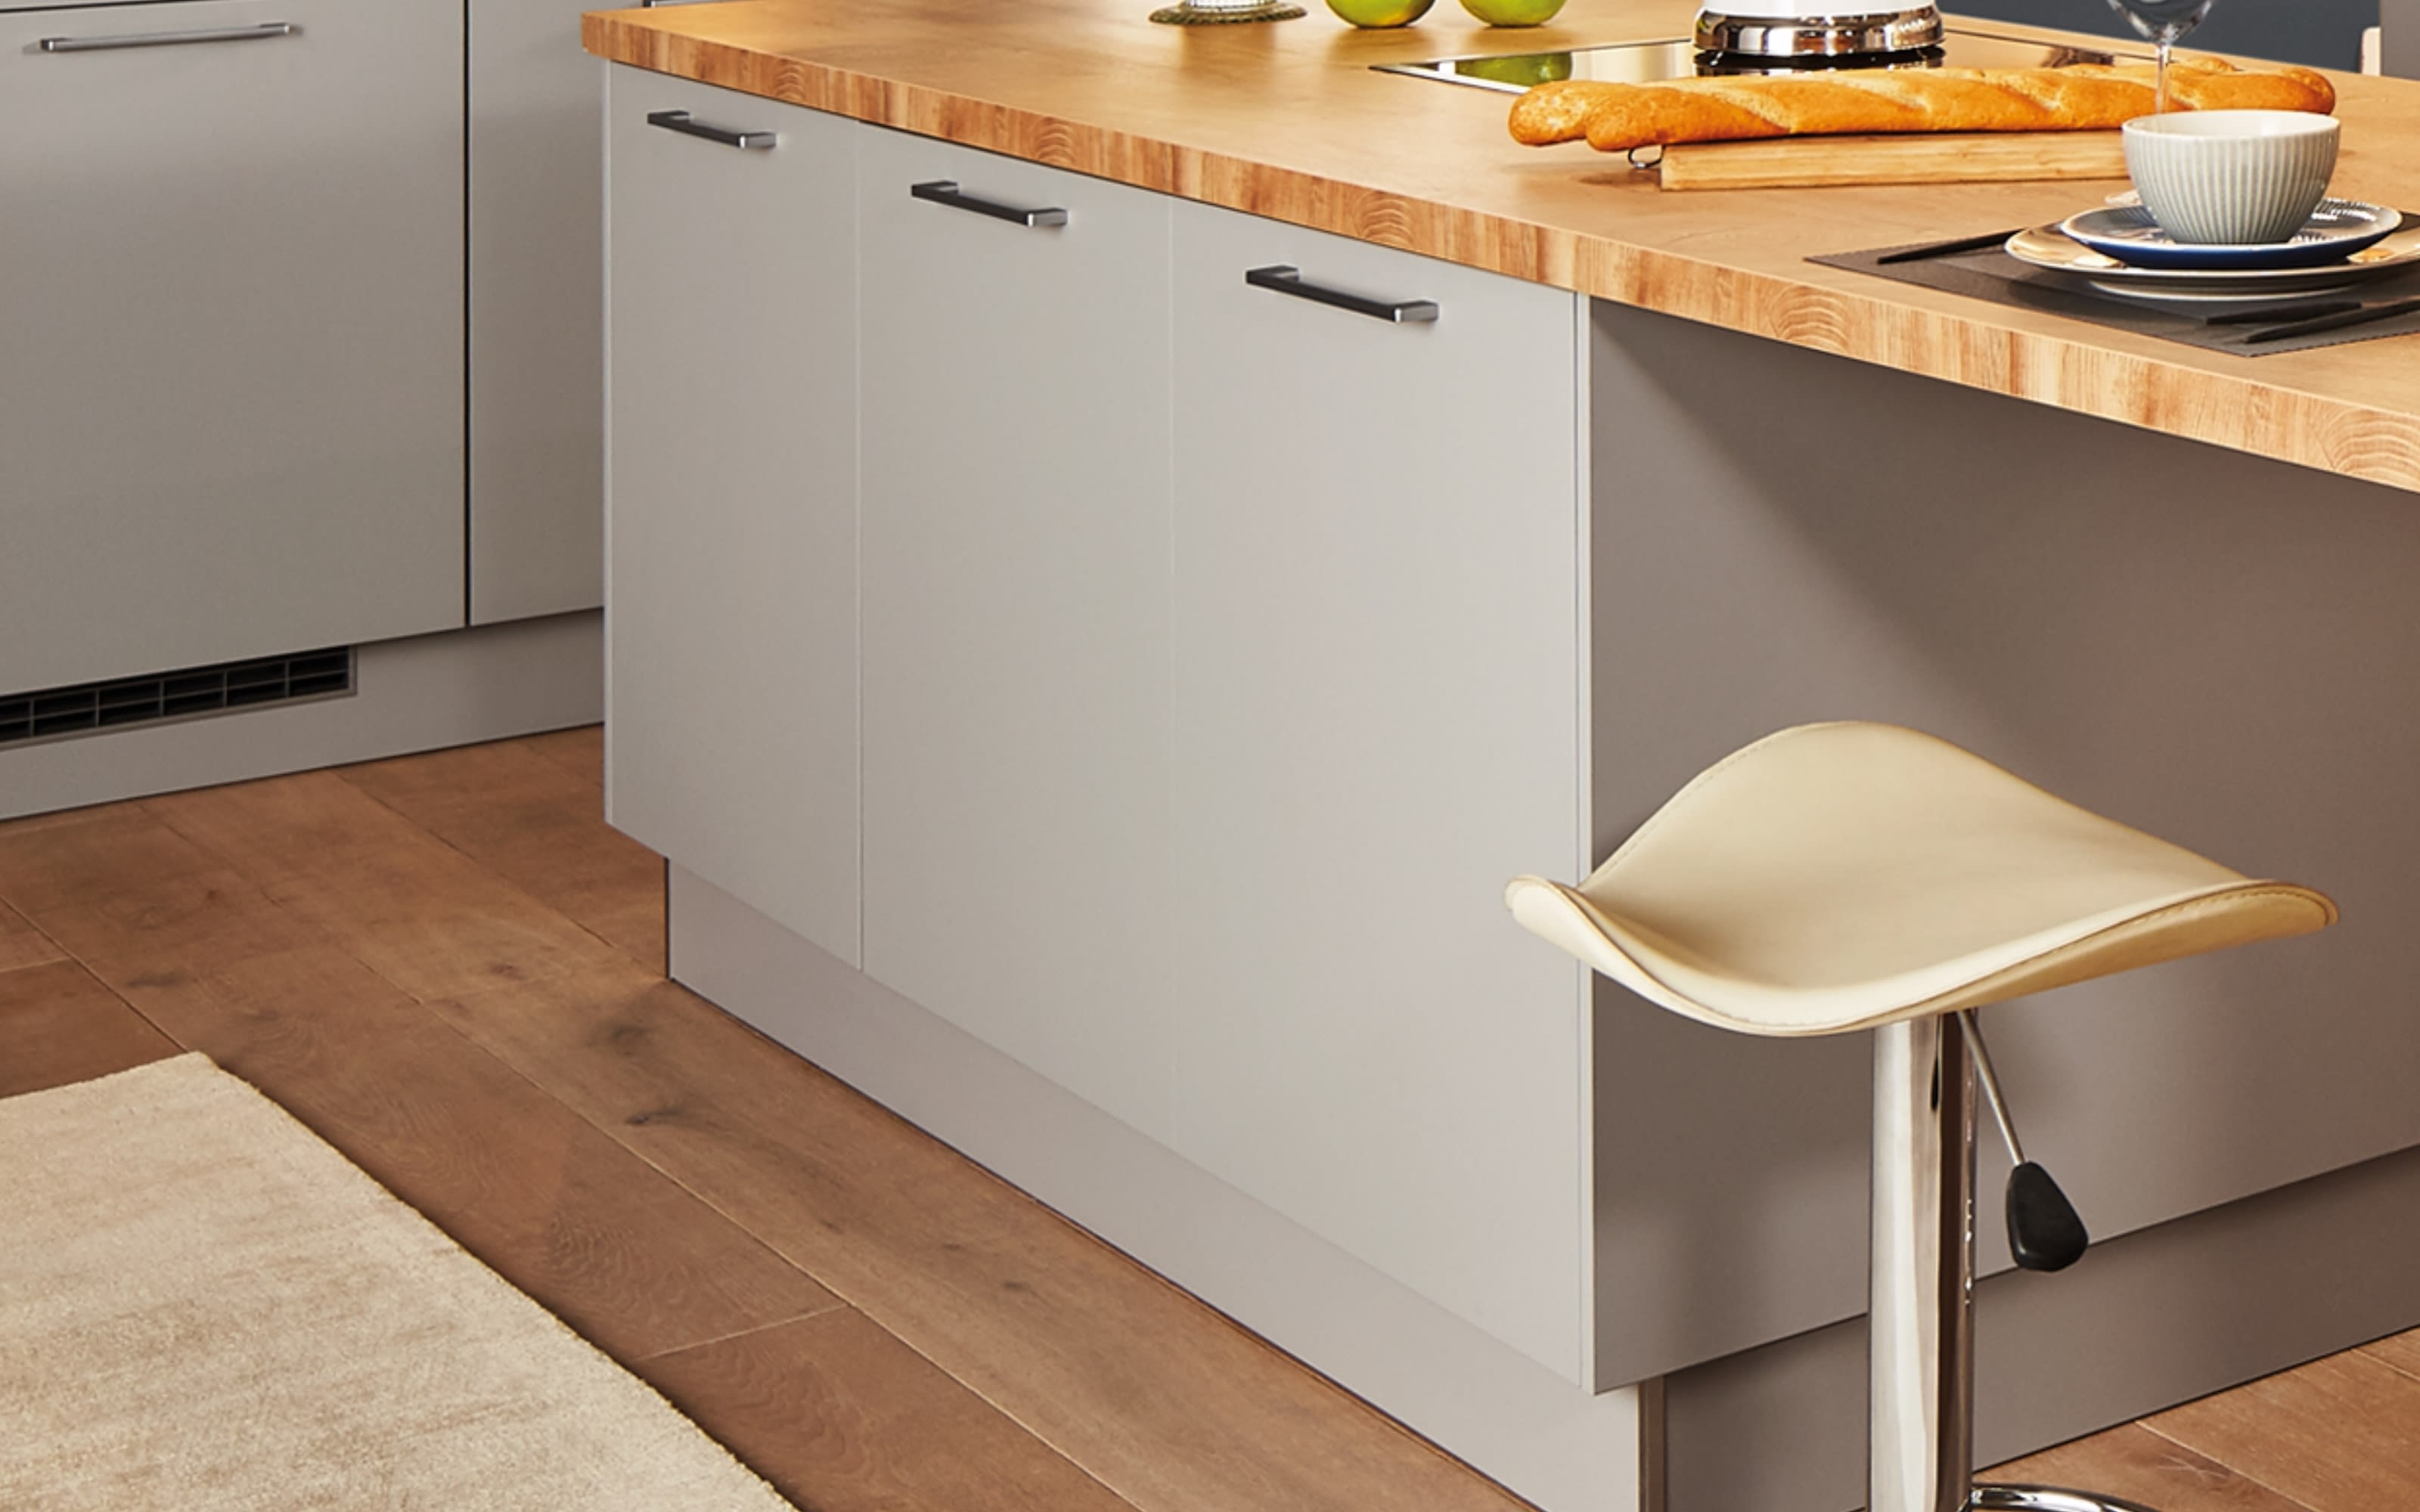 Einbauküche Perfect Soft, perlgrau, inkl. Siemens Elektrogeräte und Miele Geschirrspüler